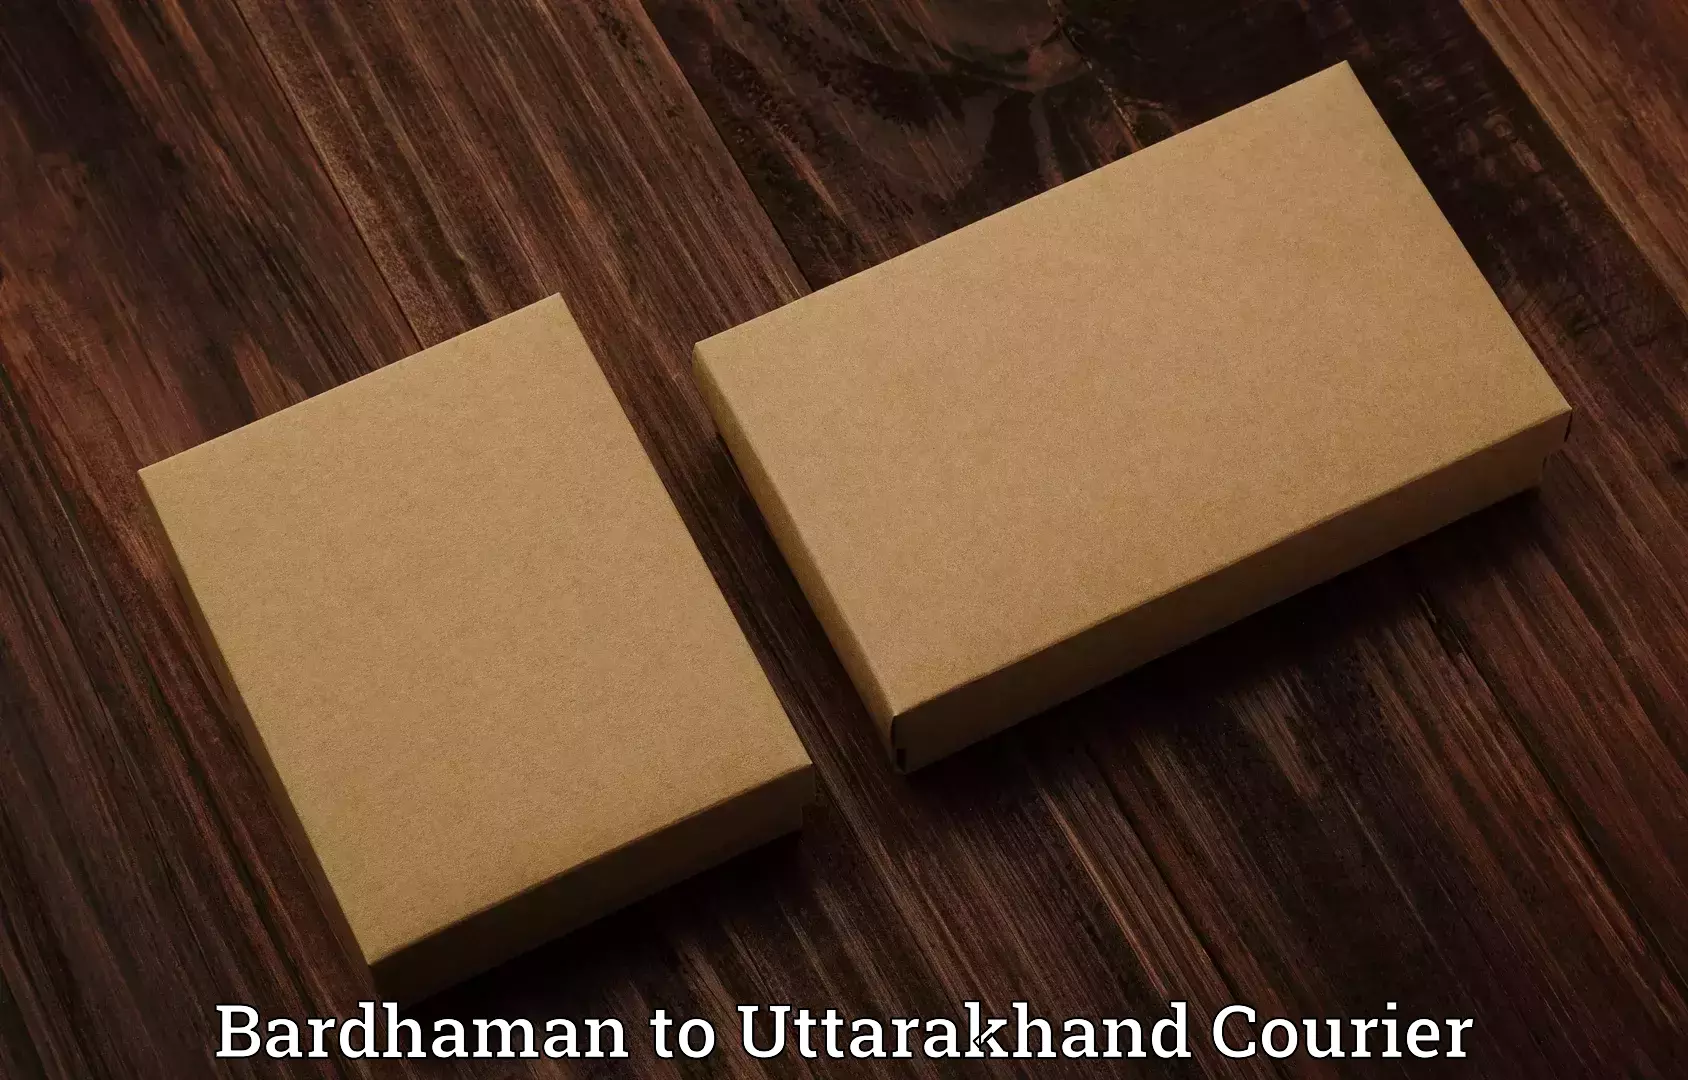 Luggage dispatch service Bardhaman to Uttarakhand